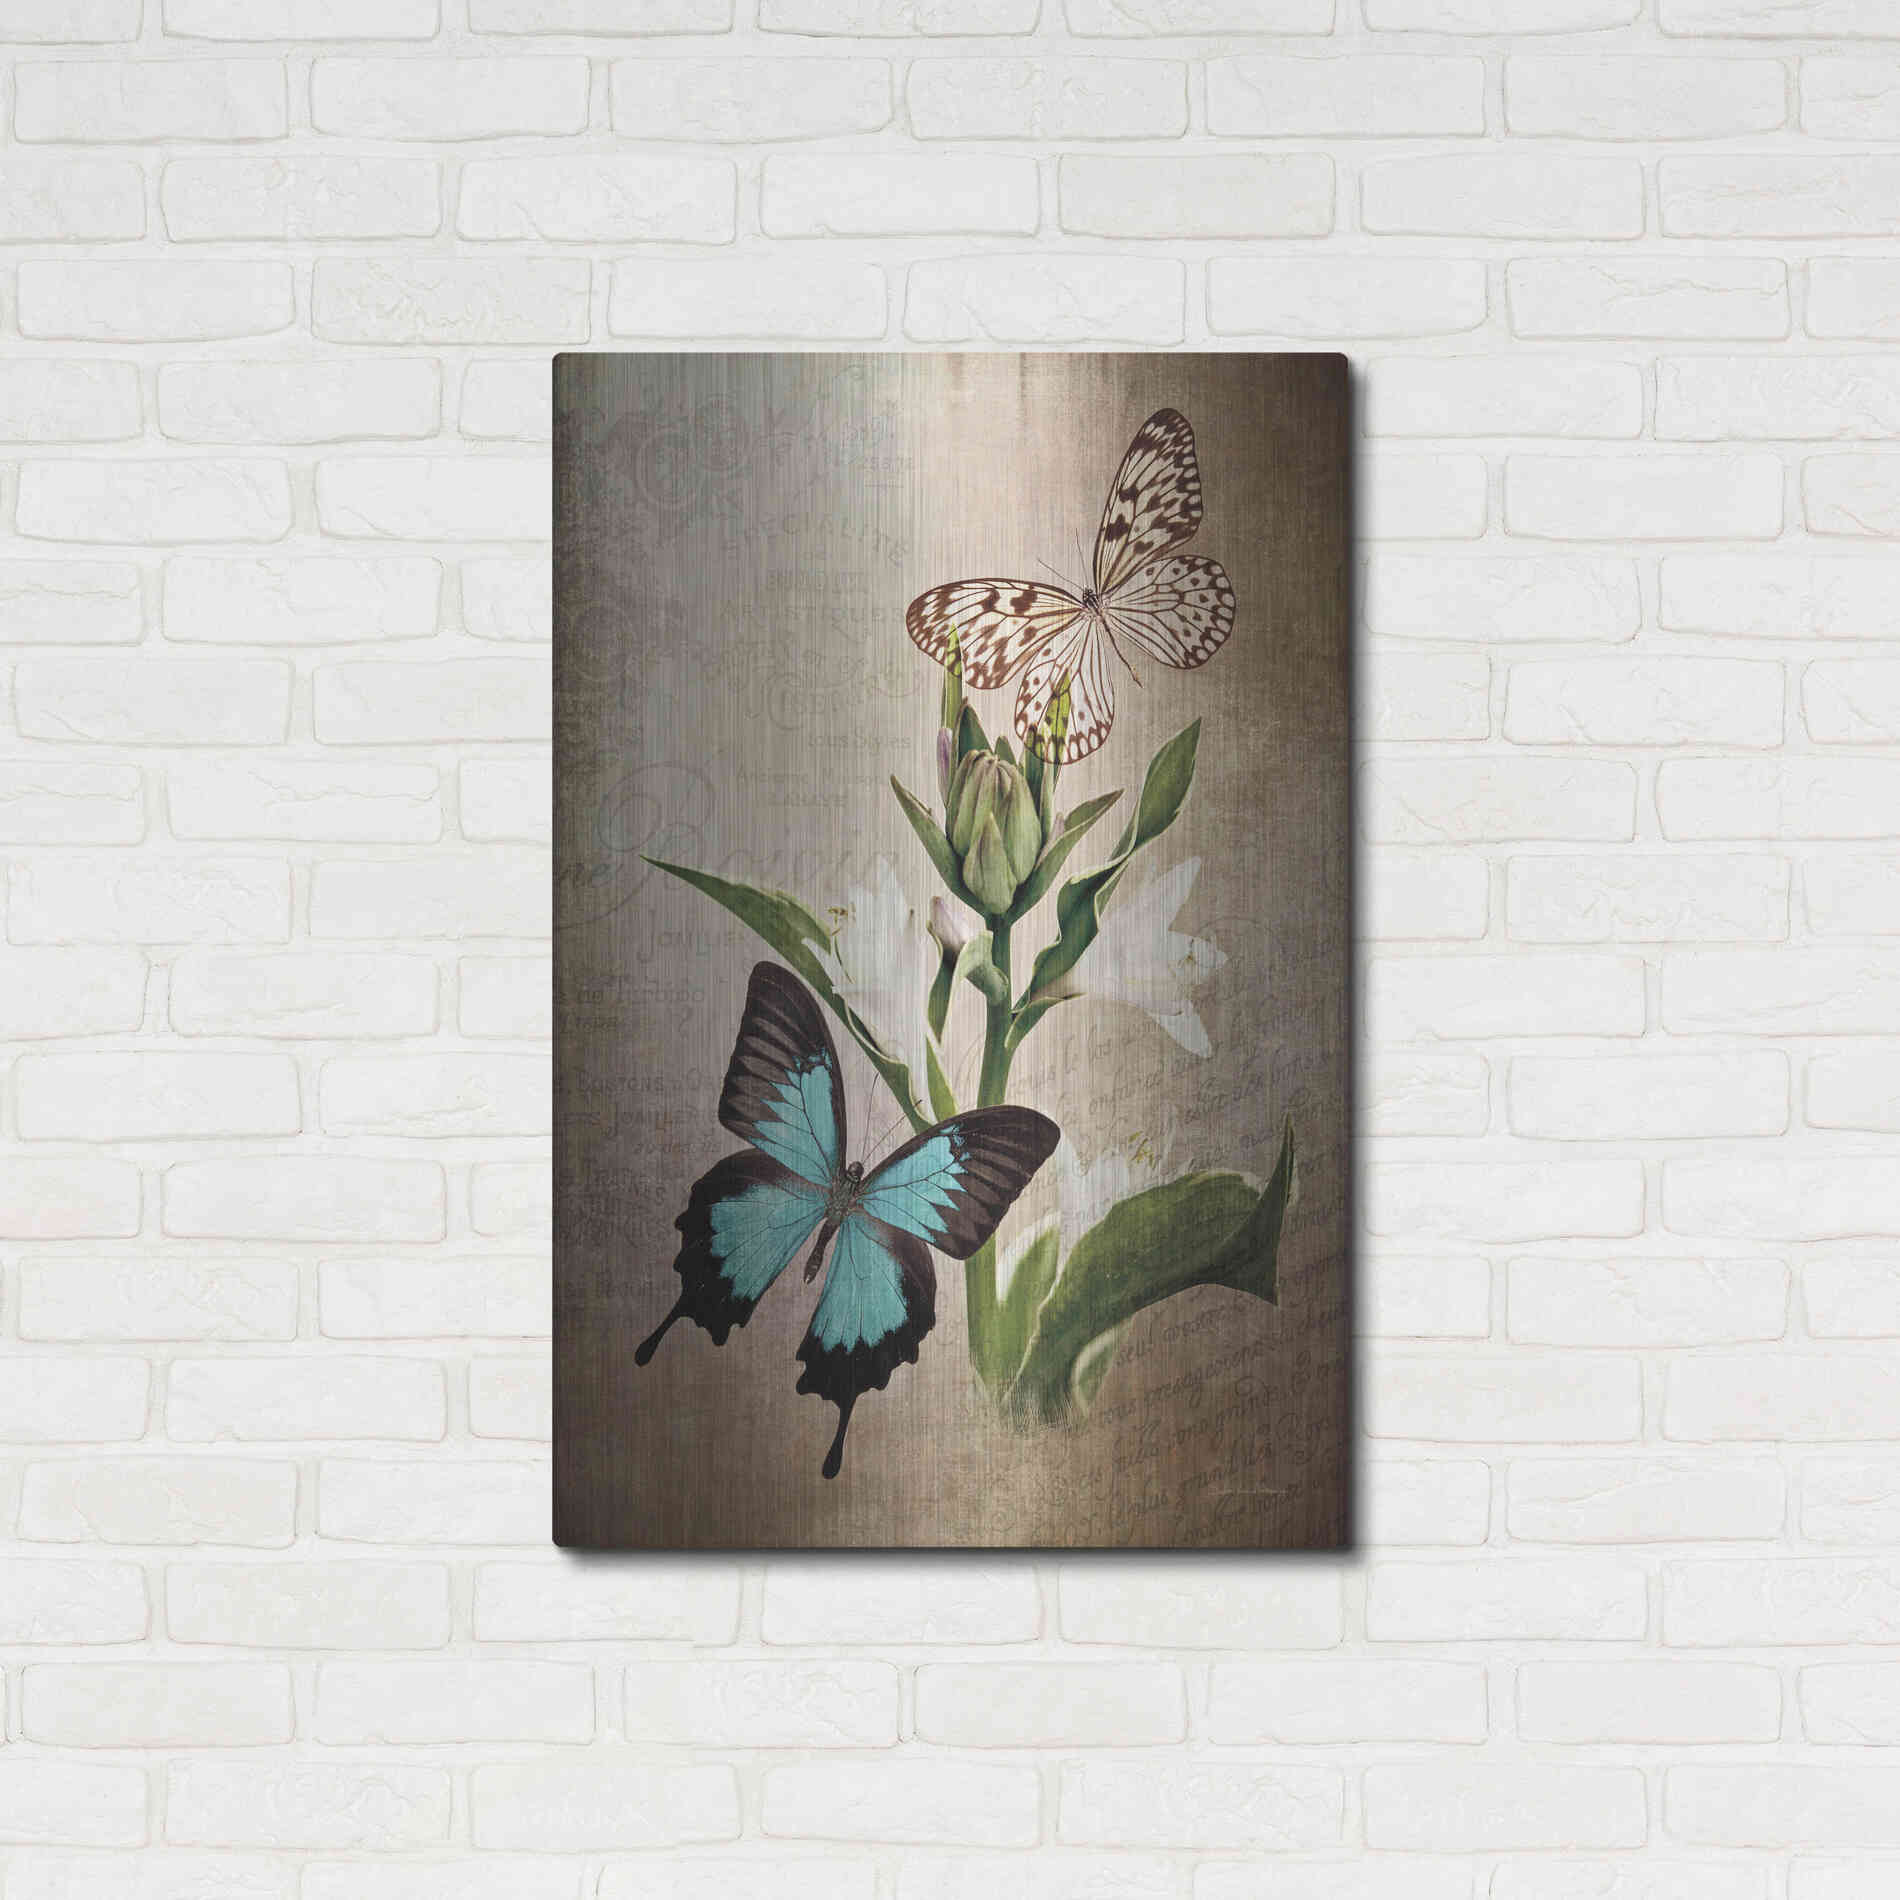 Luxe Metal Art 'Butterfly Botanical II' by Debra Van Swearingen, Metal Wall Art,24x36